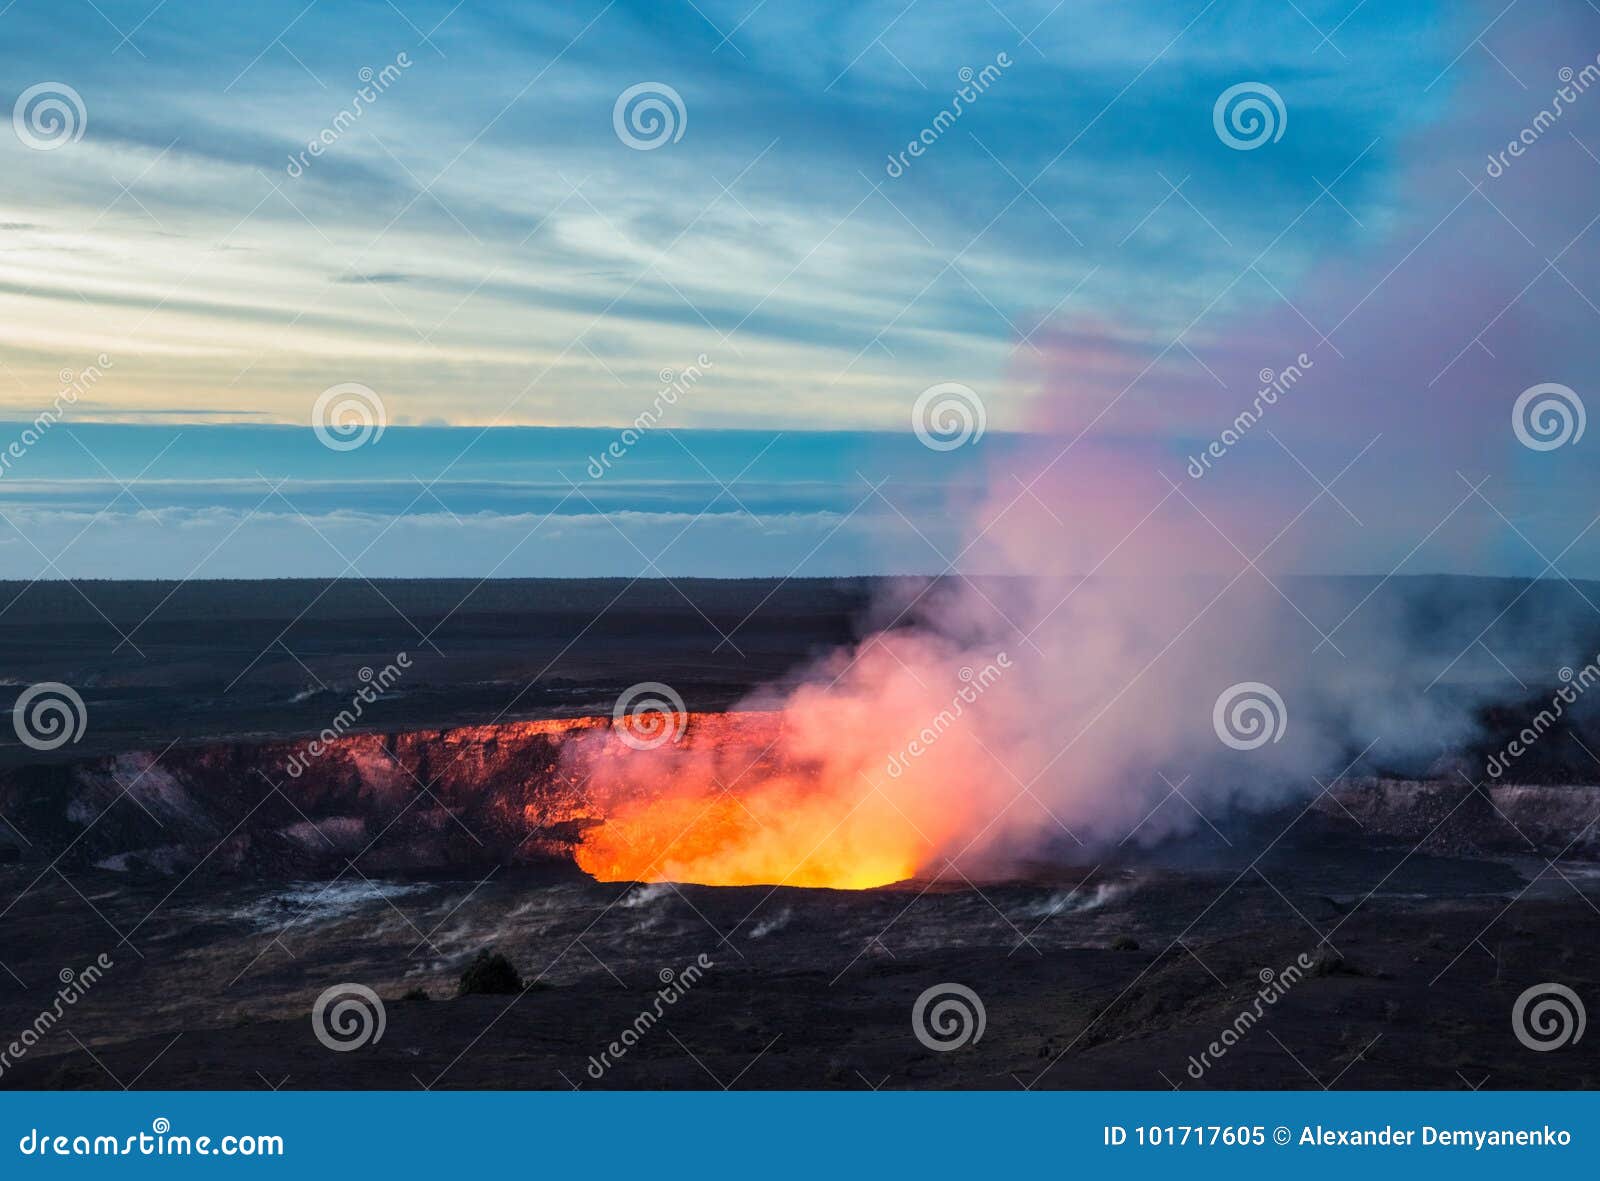 kilauea crater, hawaii volcanoes national park, big island, hawaii